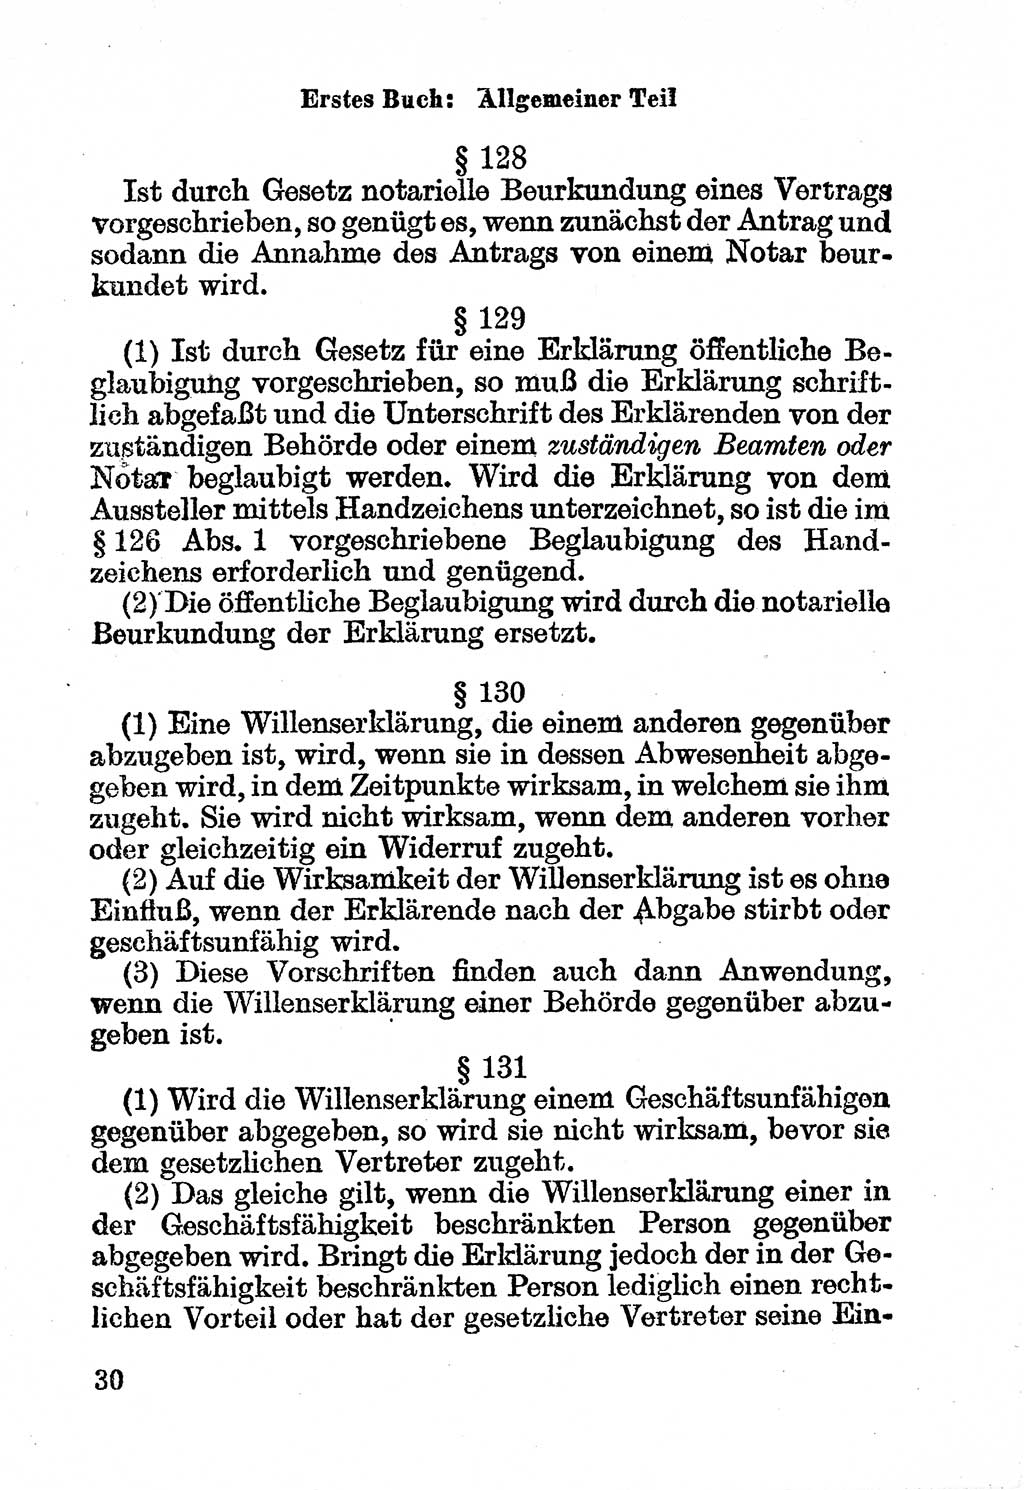 Bürgerliches Gesetzbuch (BGB) nebst wichtigen Nebengesetzen [Deutsche Demokratische Republik (DDR)] 1956, Seite 30 (BGB Nebenges. DDR 1956, S. 30)